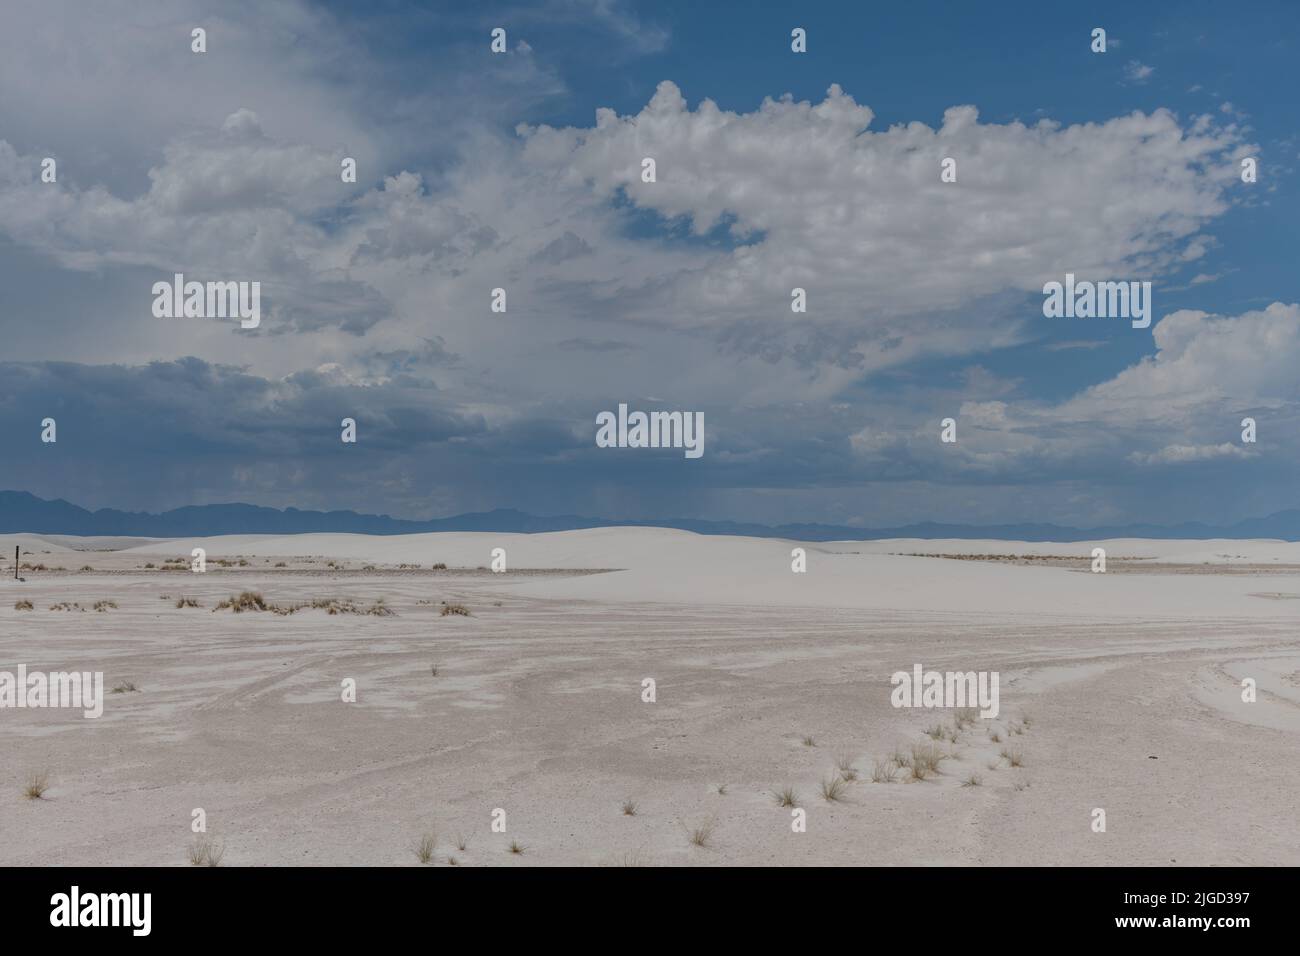 Wunderschöner blick auf die Gipsdüne im White Sands National Park, der während der Monsunsaison im Süden von New Mexico vor dramatischem Himmel liegt Stockfoto